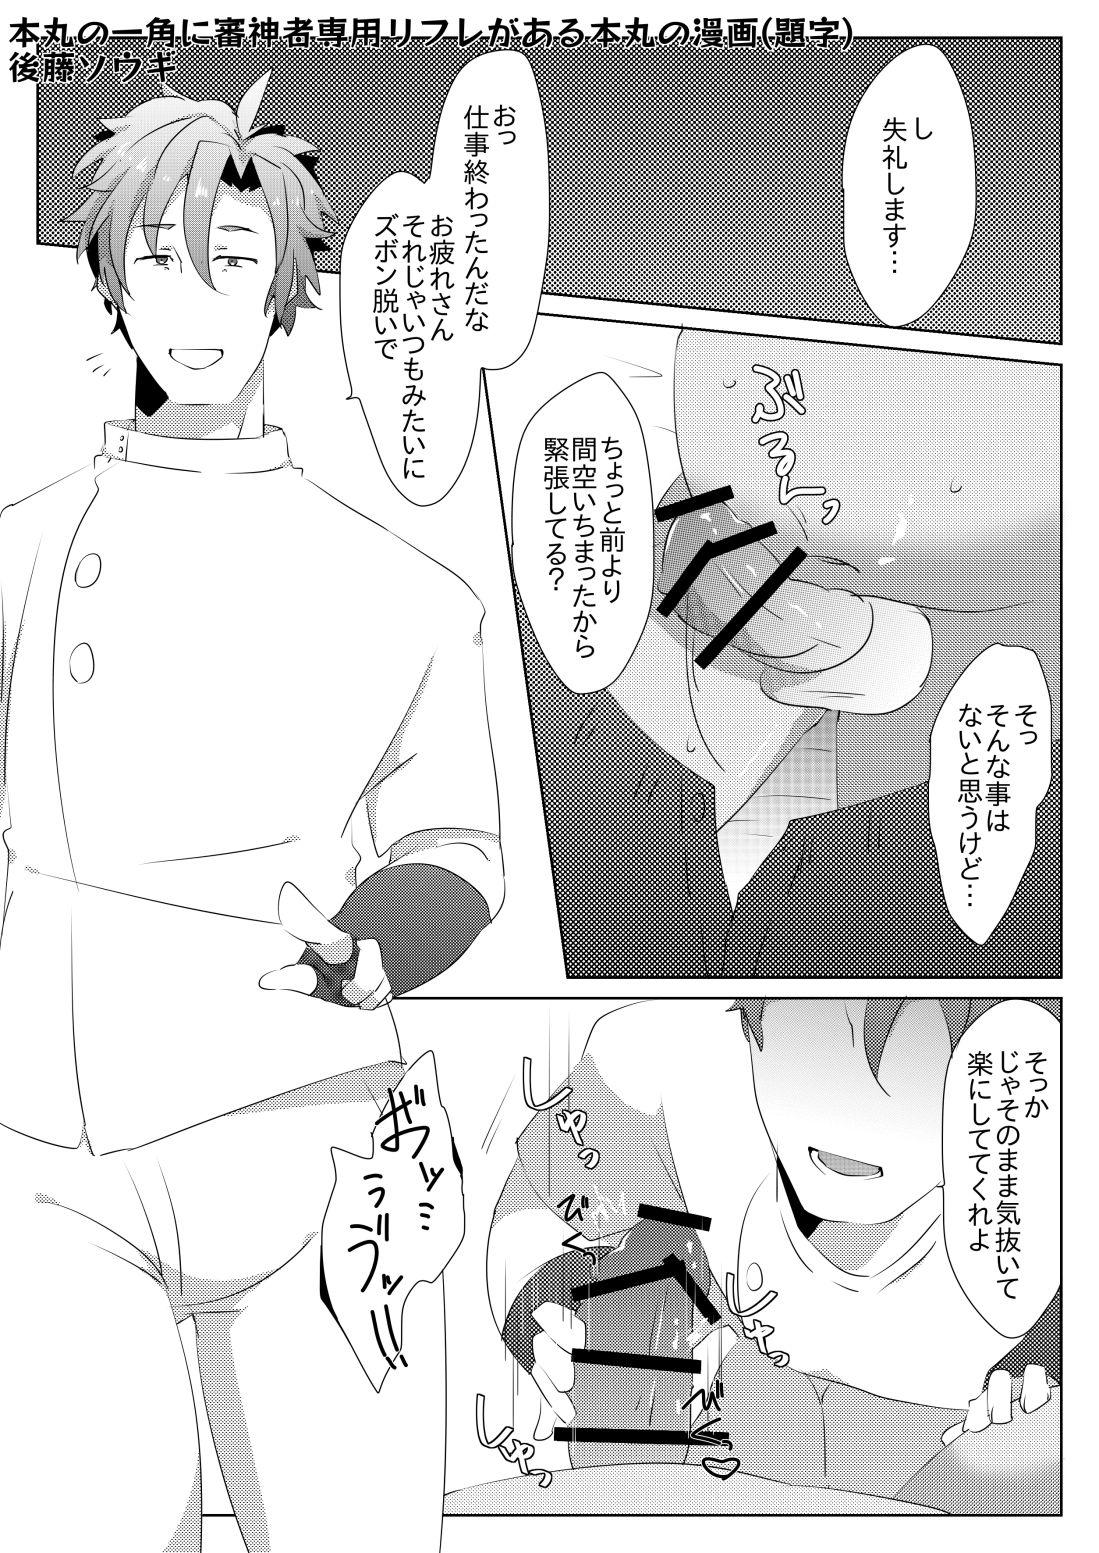 Famosa エア新刊出なかったごめん漫画 - Touken ranbu Amateur Cum - Page 2